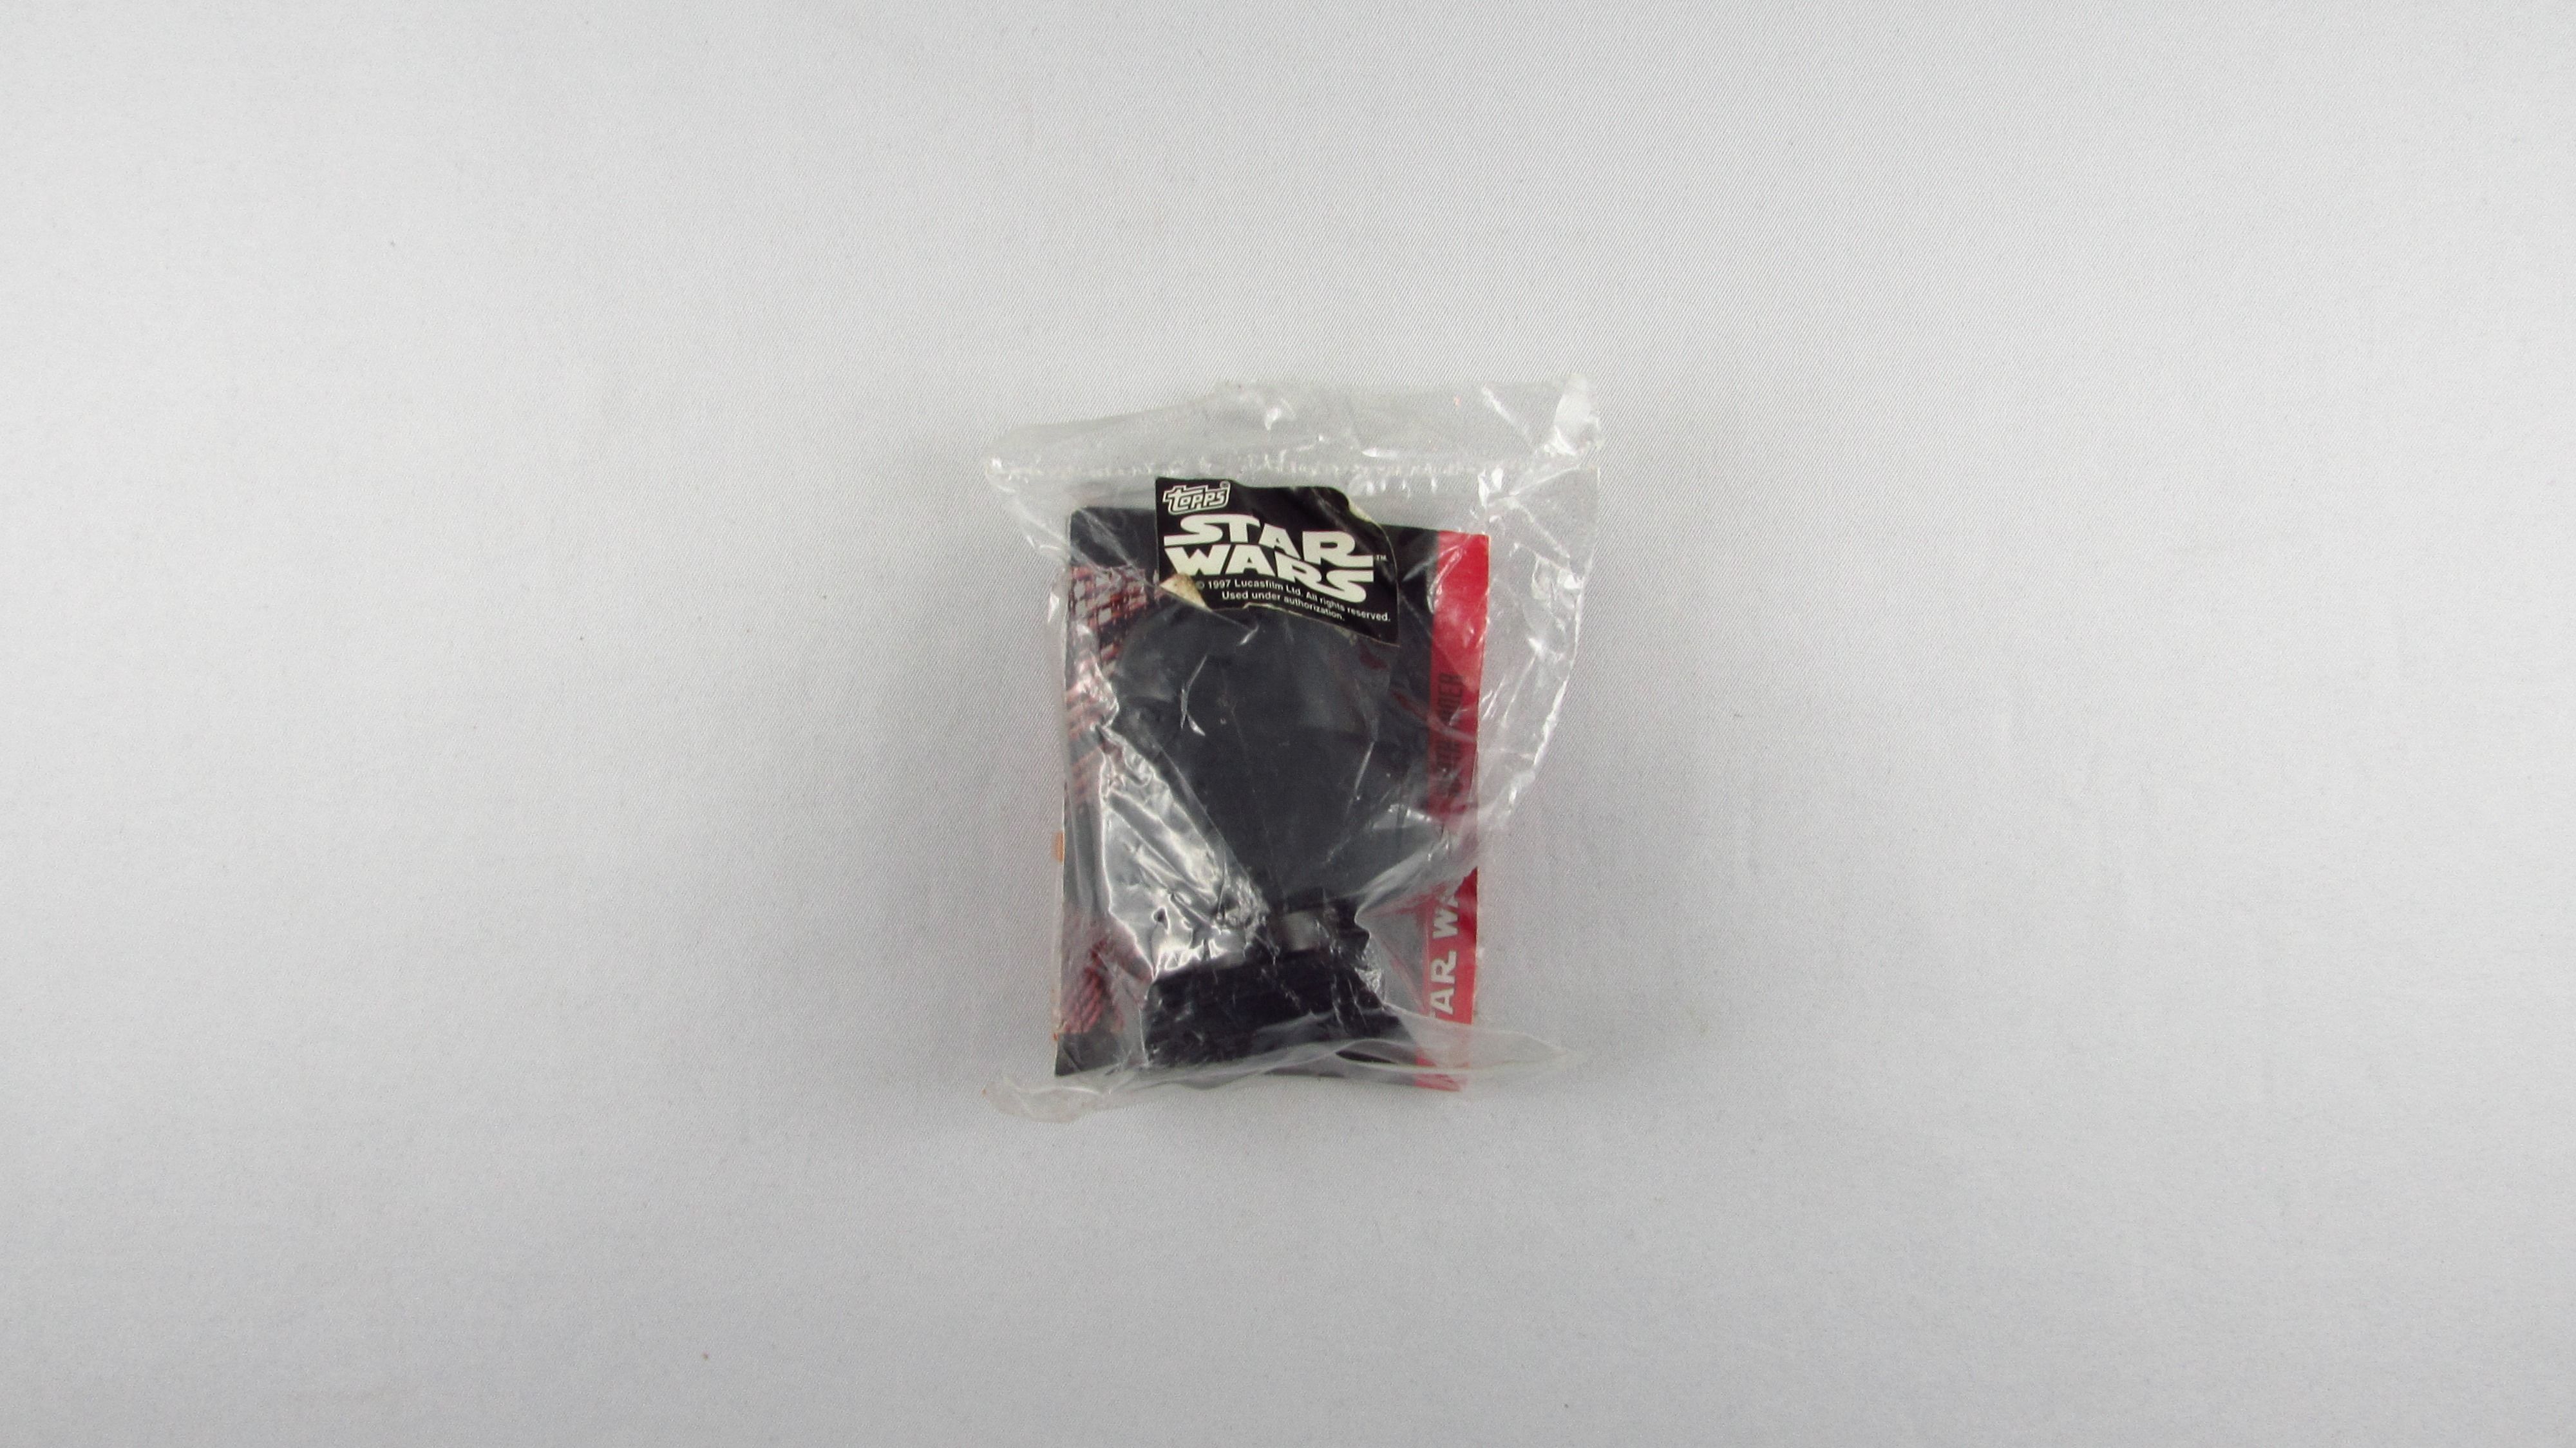 TOPPS - Star Wars - Darth Vader - Kolekcjonrska Głowa + Karta 1995 r.